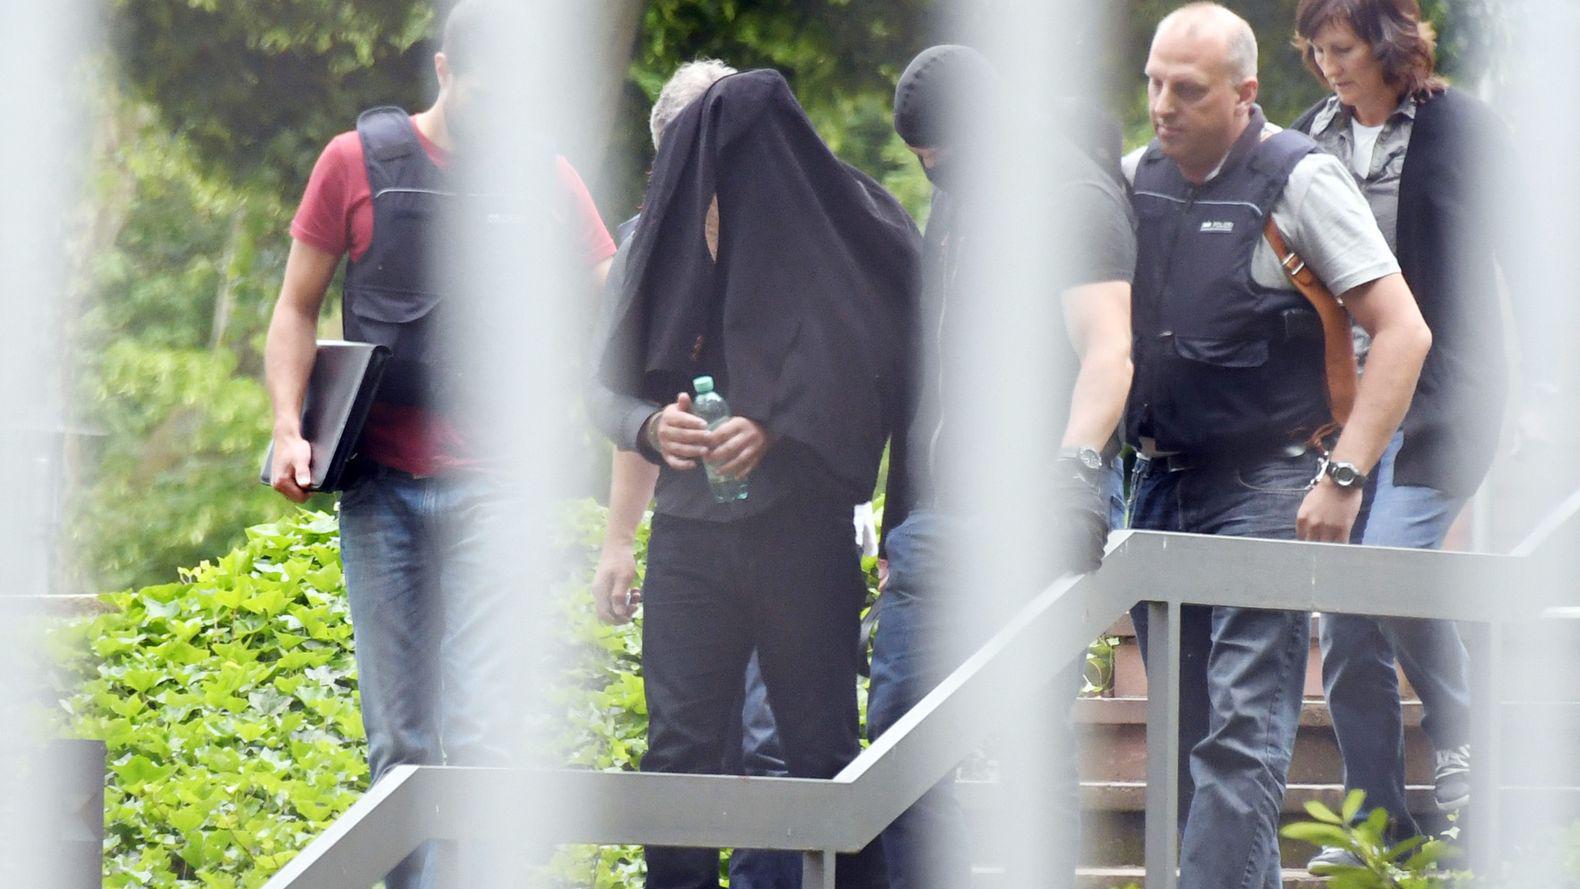 Celula ISIS ascunsa in inima Europei. Dezvaluirile cutremuratoare pe care un jihadist le-a facut in Franta